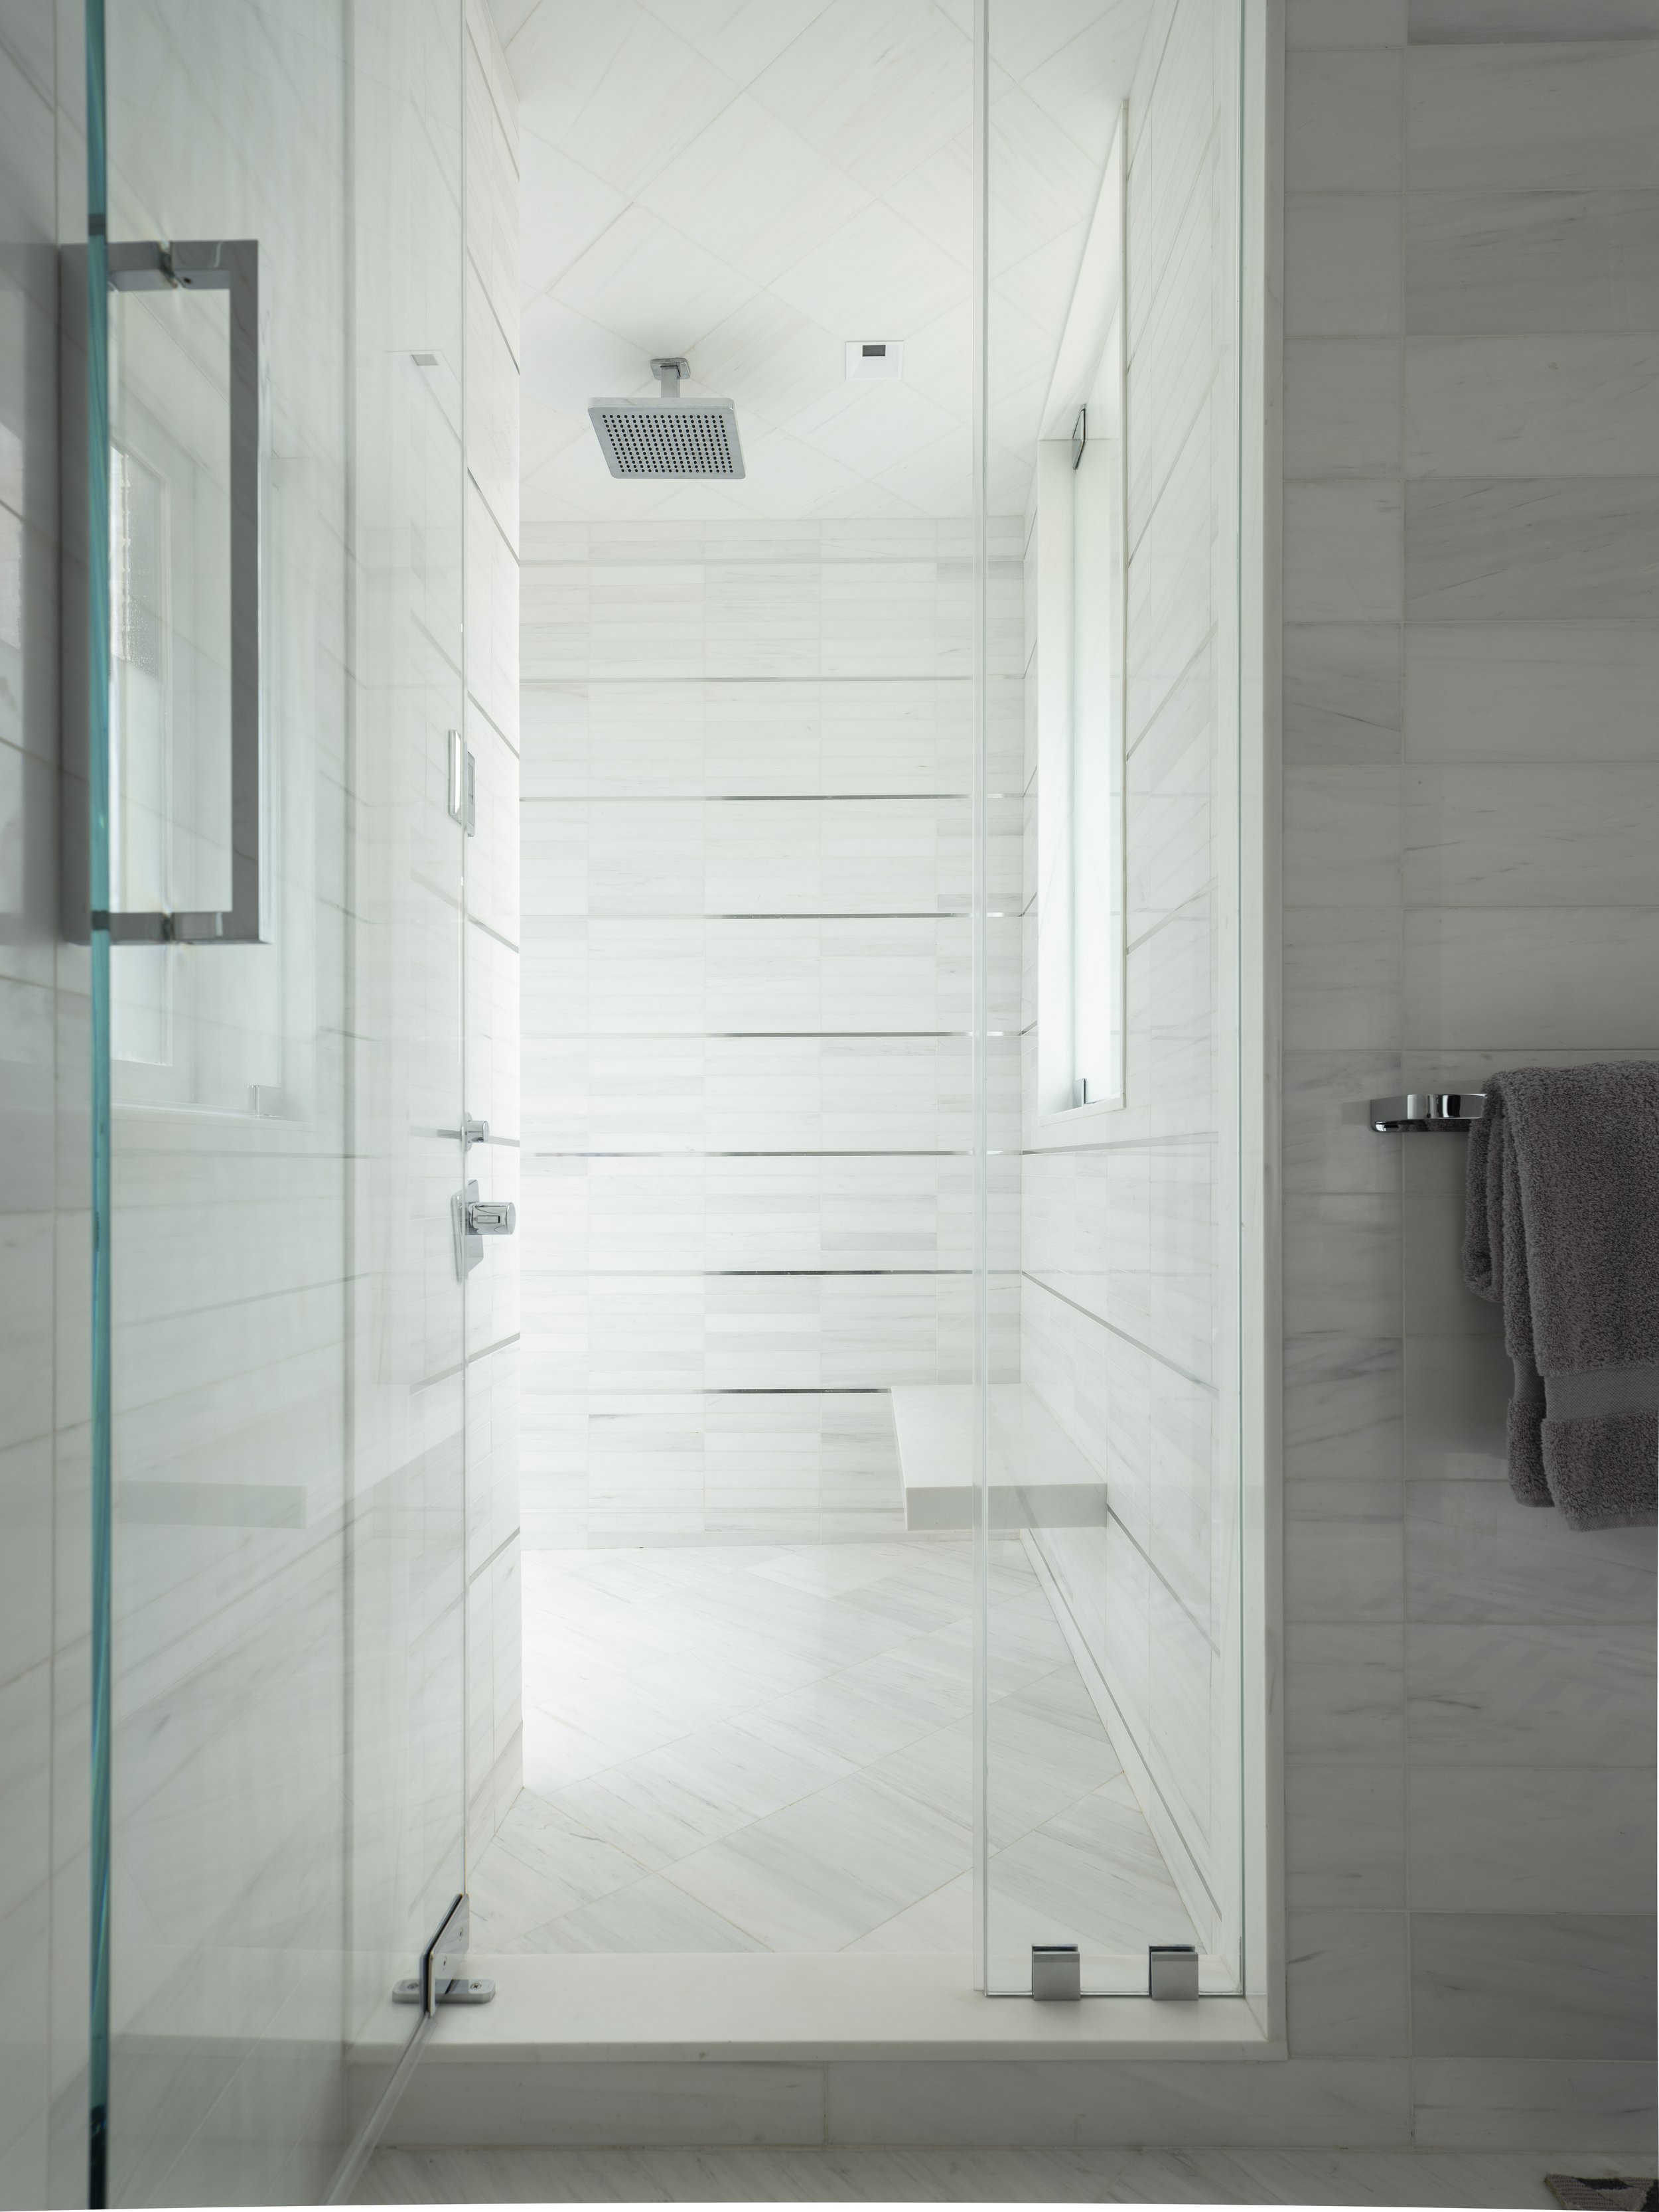 26-simple-light-walk-in-shower-white-tiled-manhattan-penthouse-rinfret-interior-designs..jpg